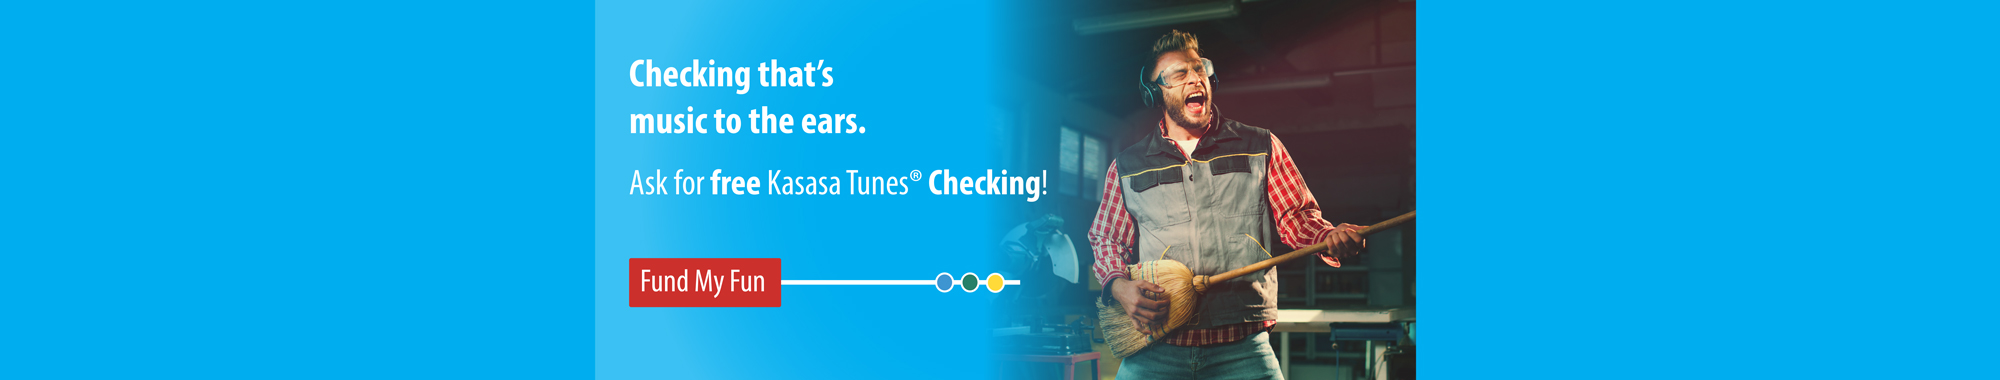 Ask for free Kasasa Tunes checking!